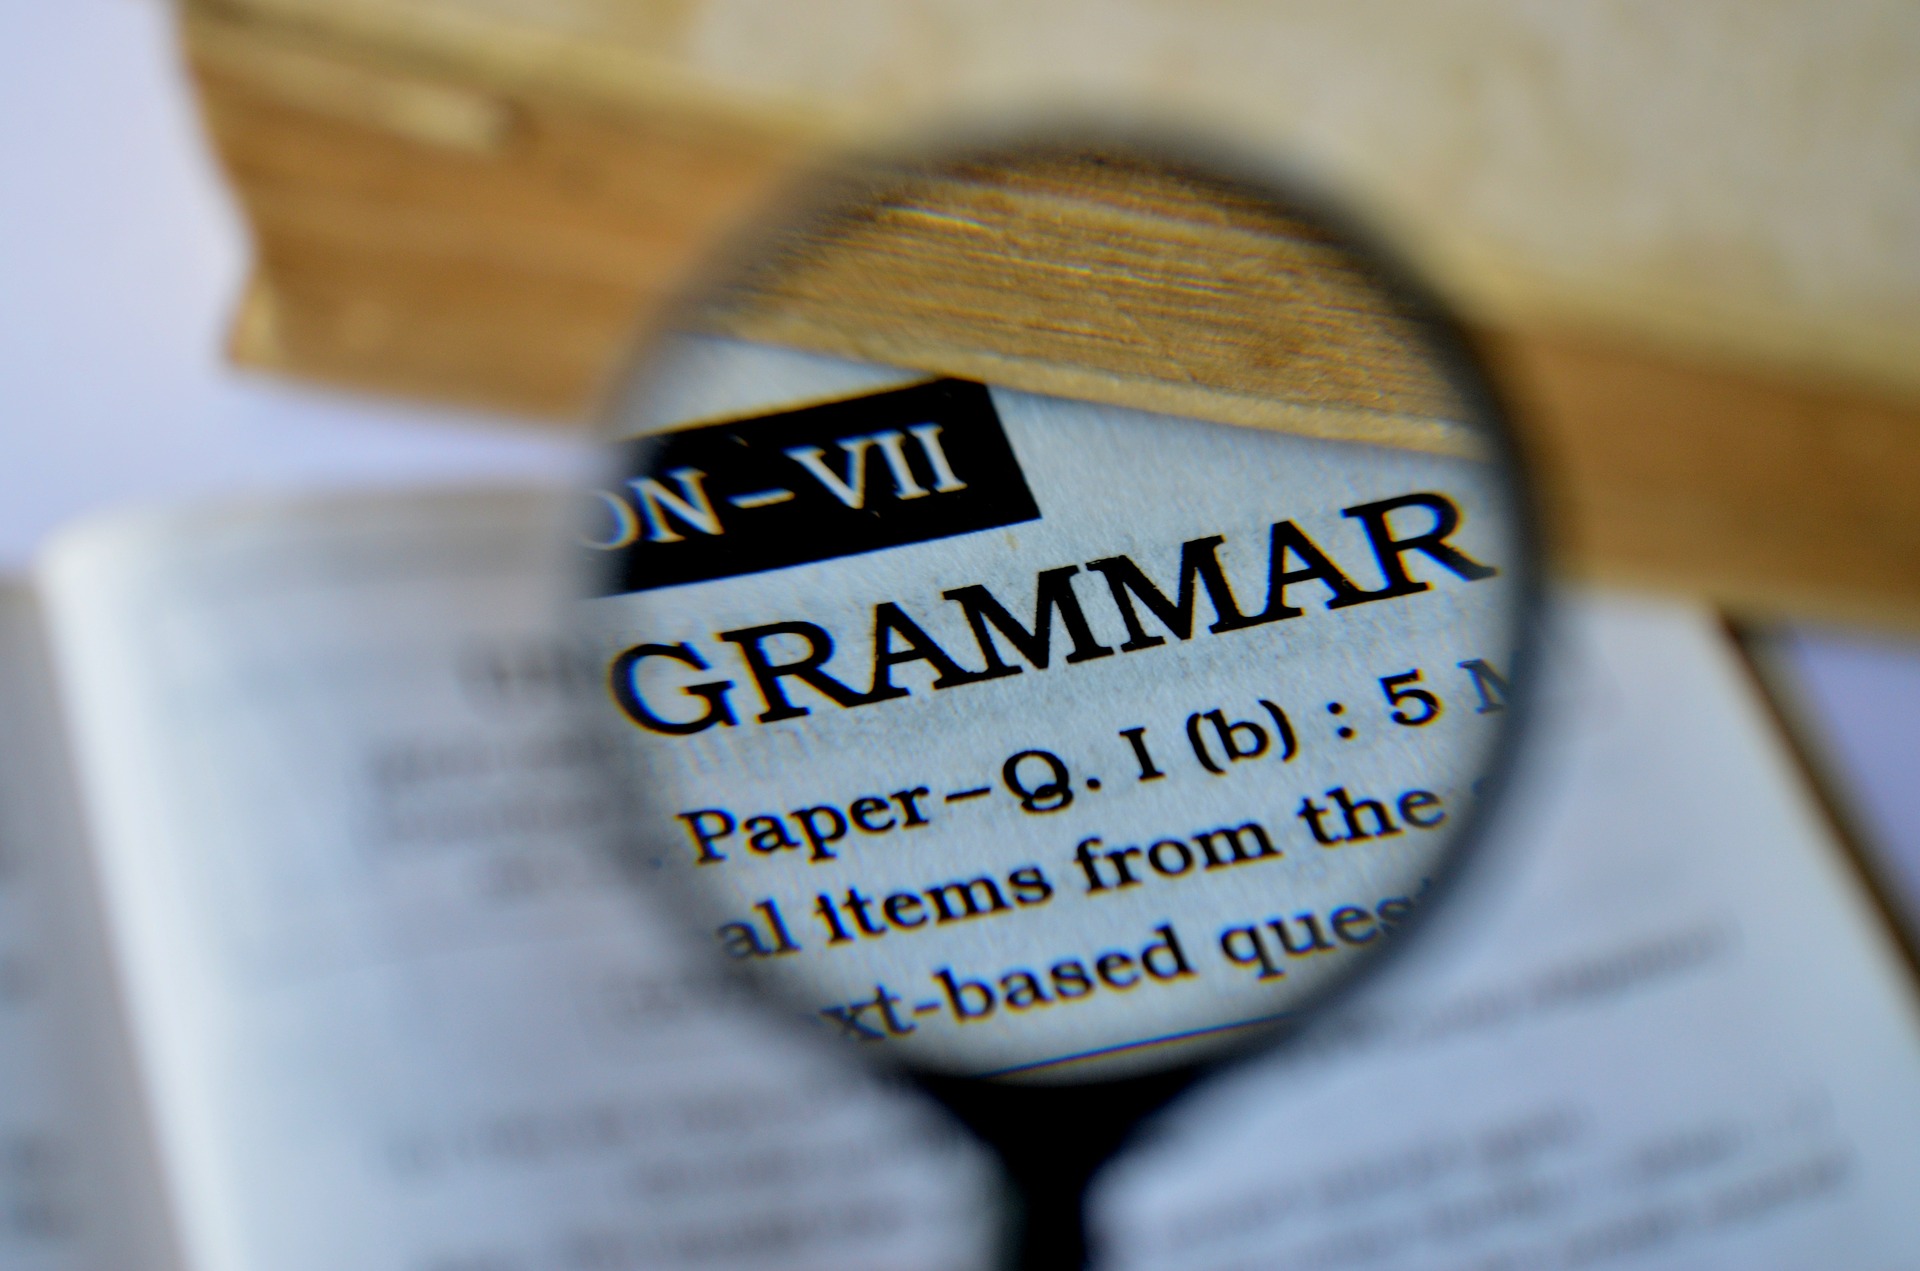 Pratiquer la grammaire avec un document authentique